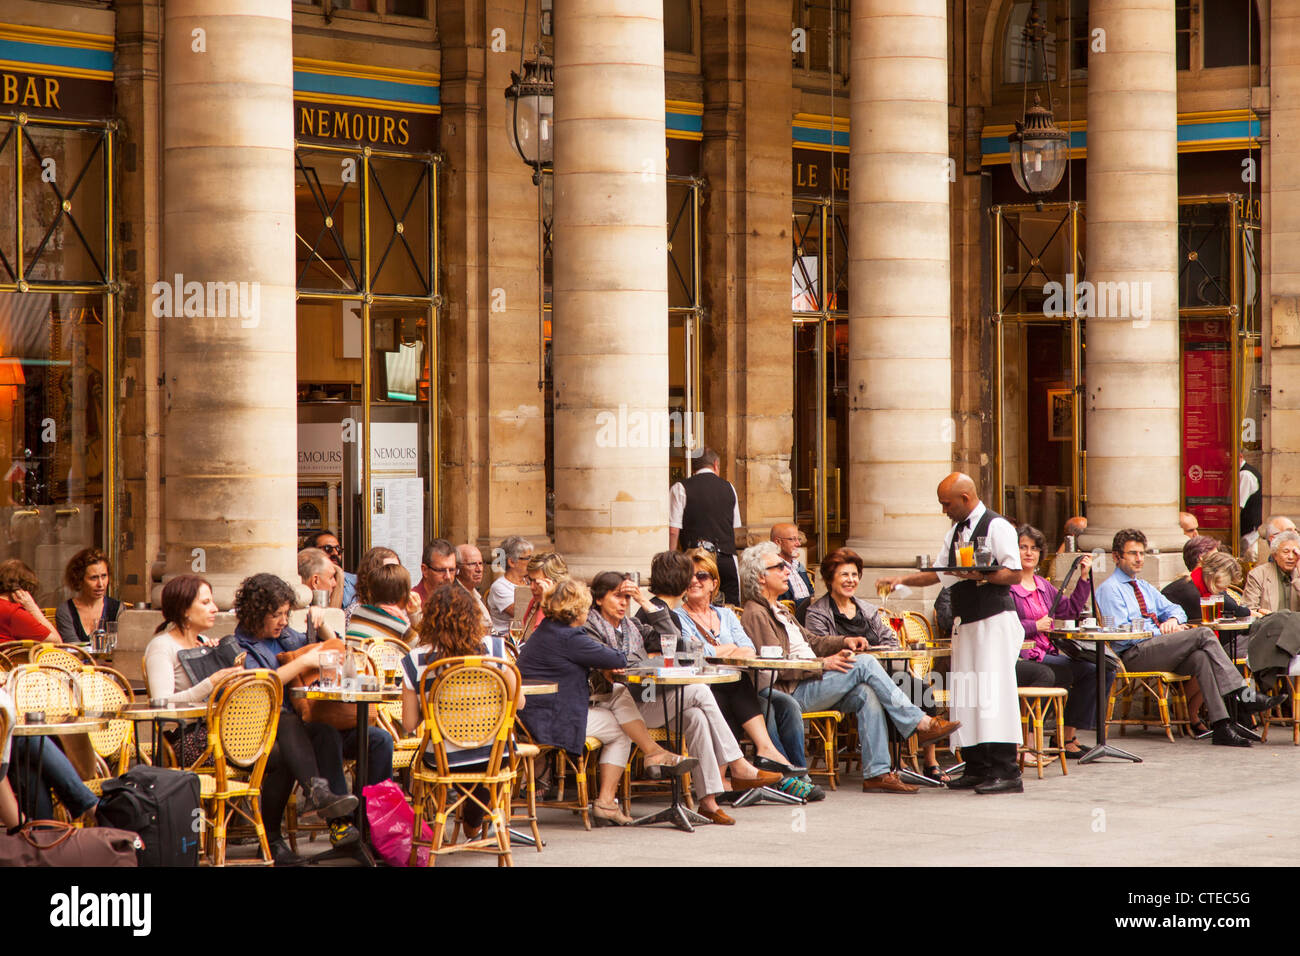 Outdoor Cafe - Le Nemours, in Place Colette, Paris France Stock Photo